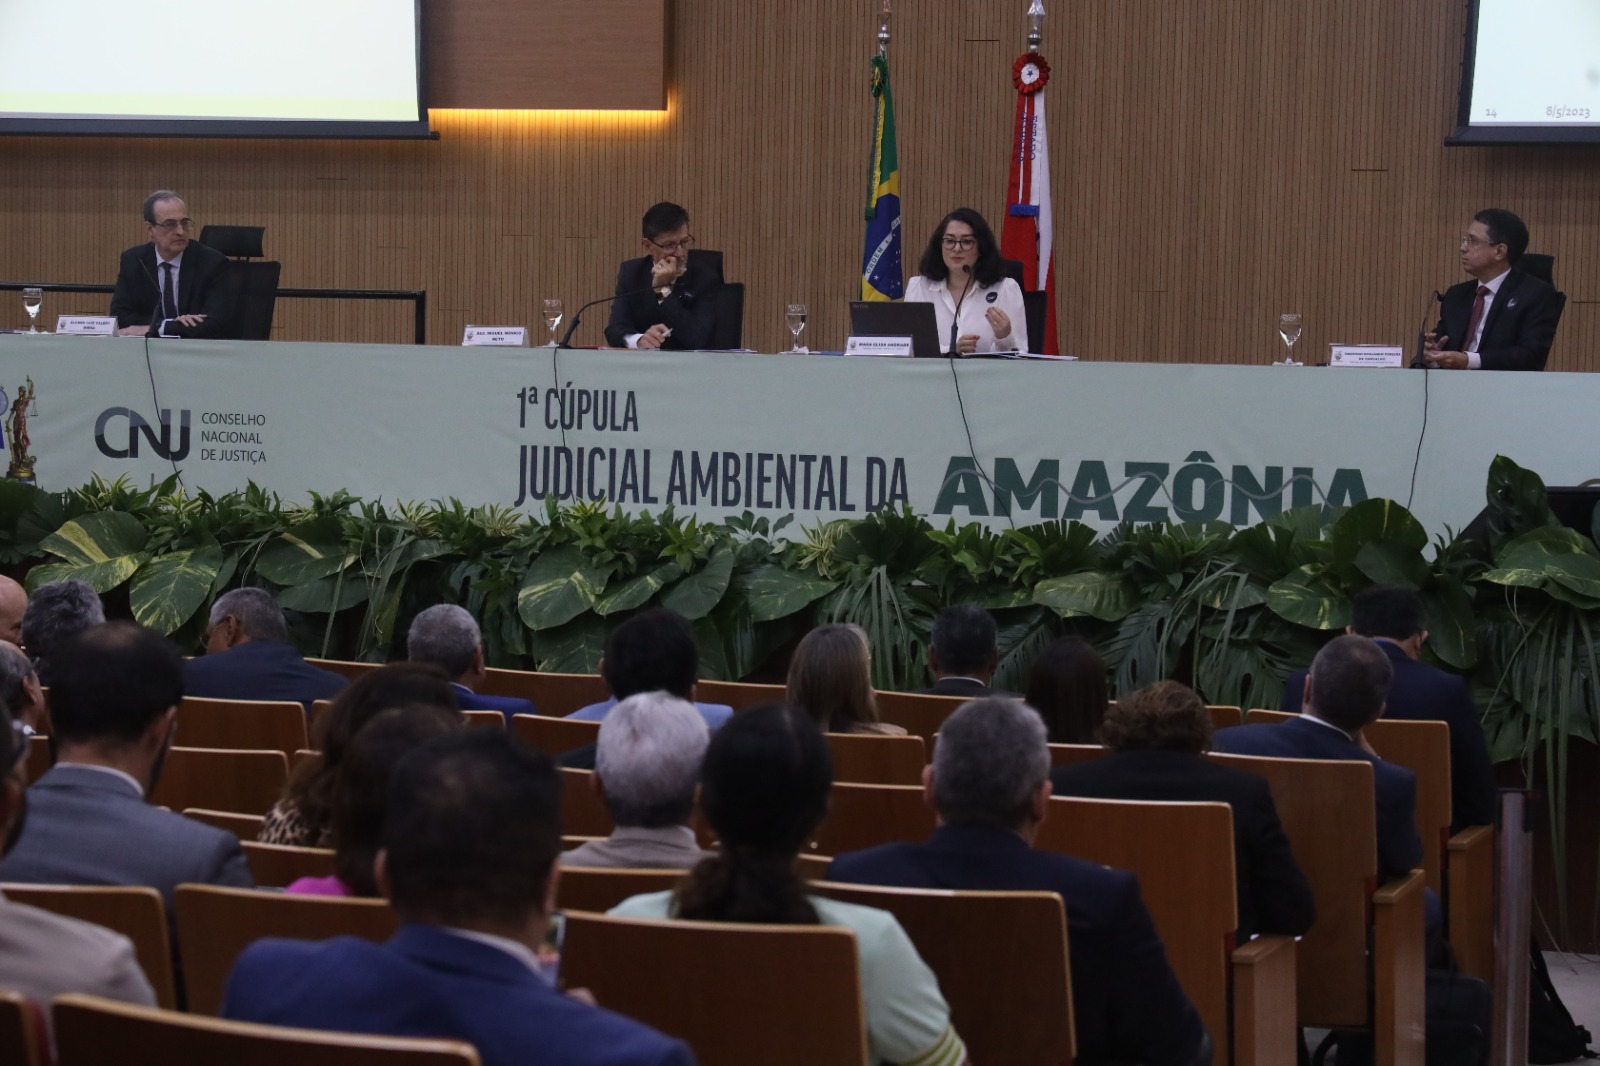 INSTITUCIONAL: TRF1 participa da 1ª Cúpula Judicial Ambiental da Amazônia